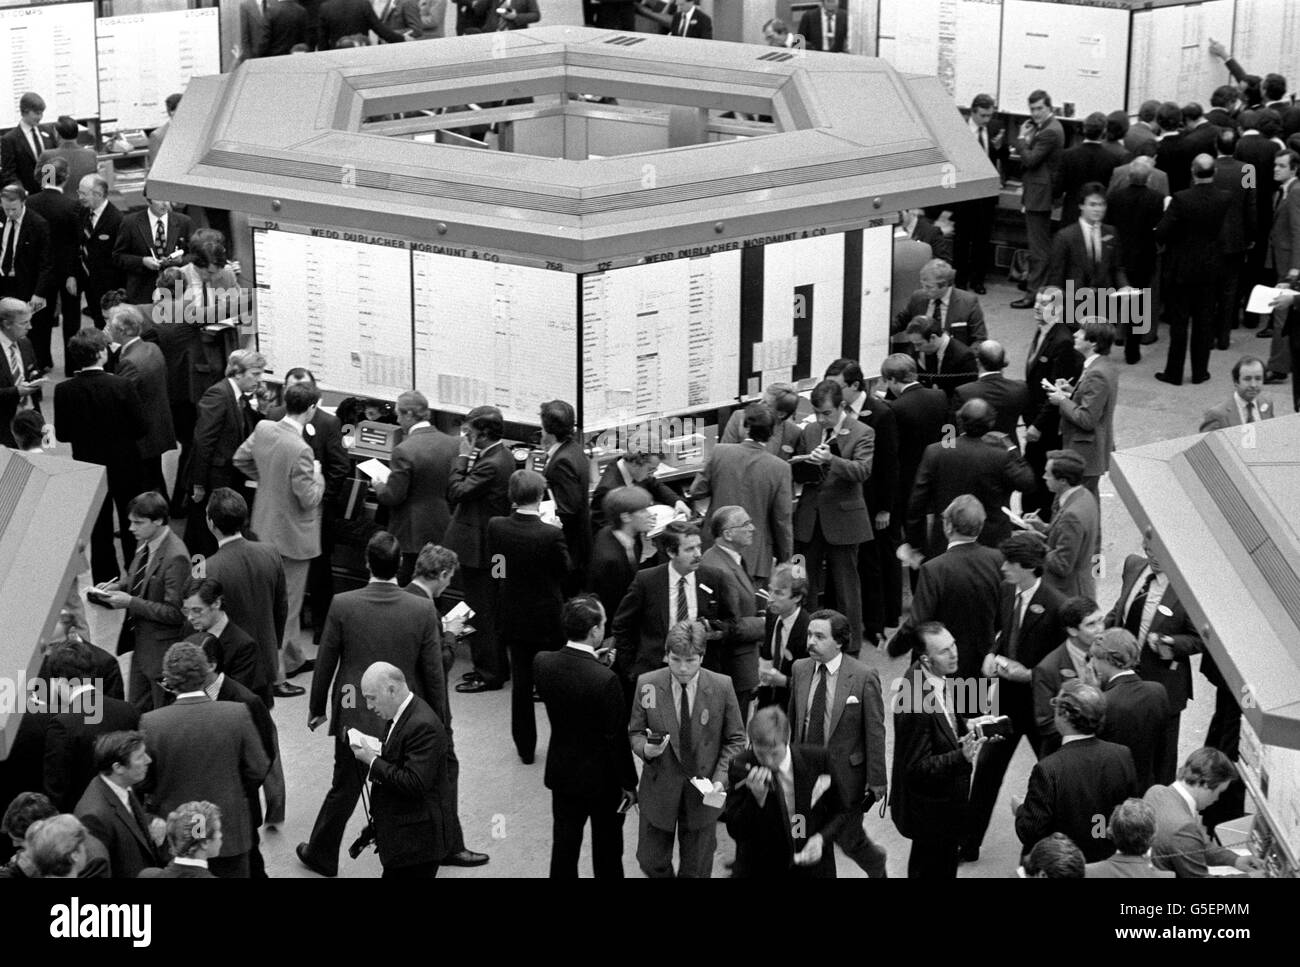 Le plancher de la Bourse de Londres où l'indice Financial Times a augmenté de 22.4 points dans une demi-heure de l'ouverture du marché. Banque D'Images